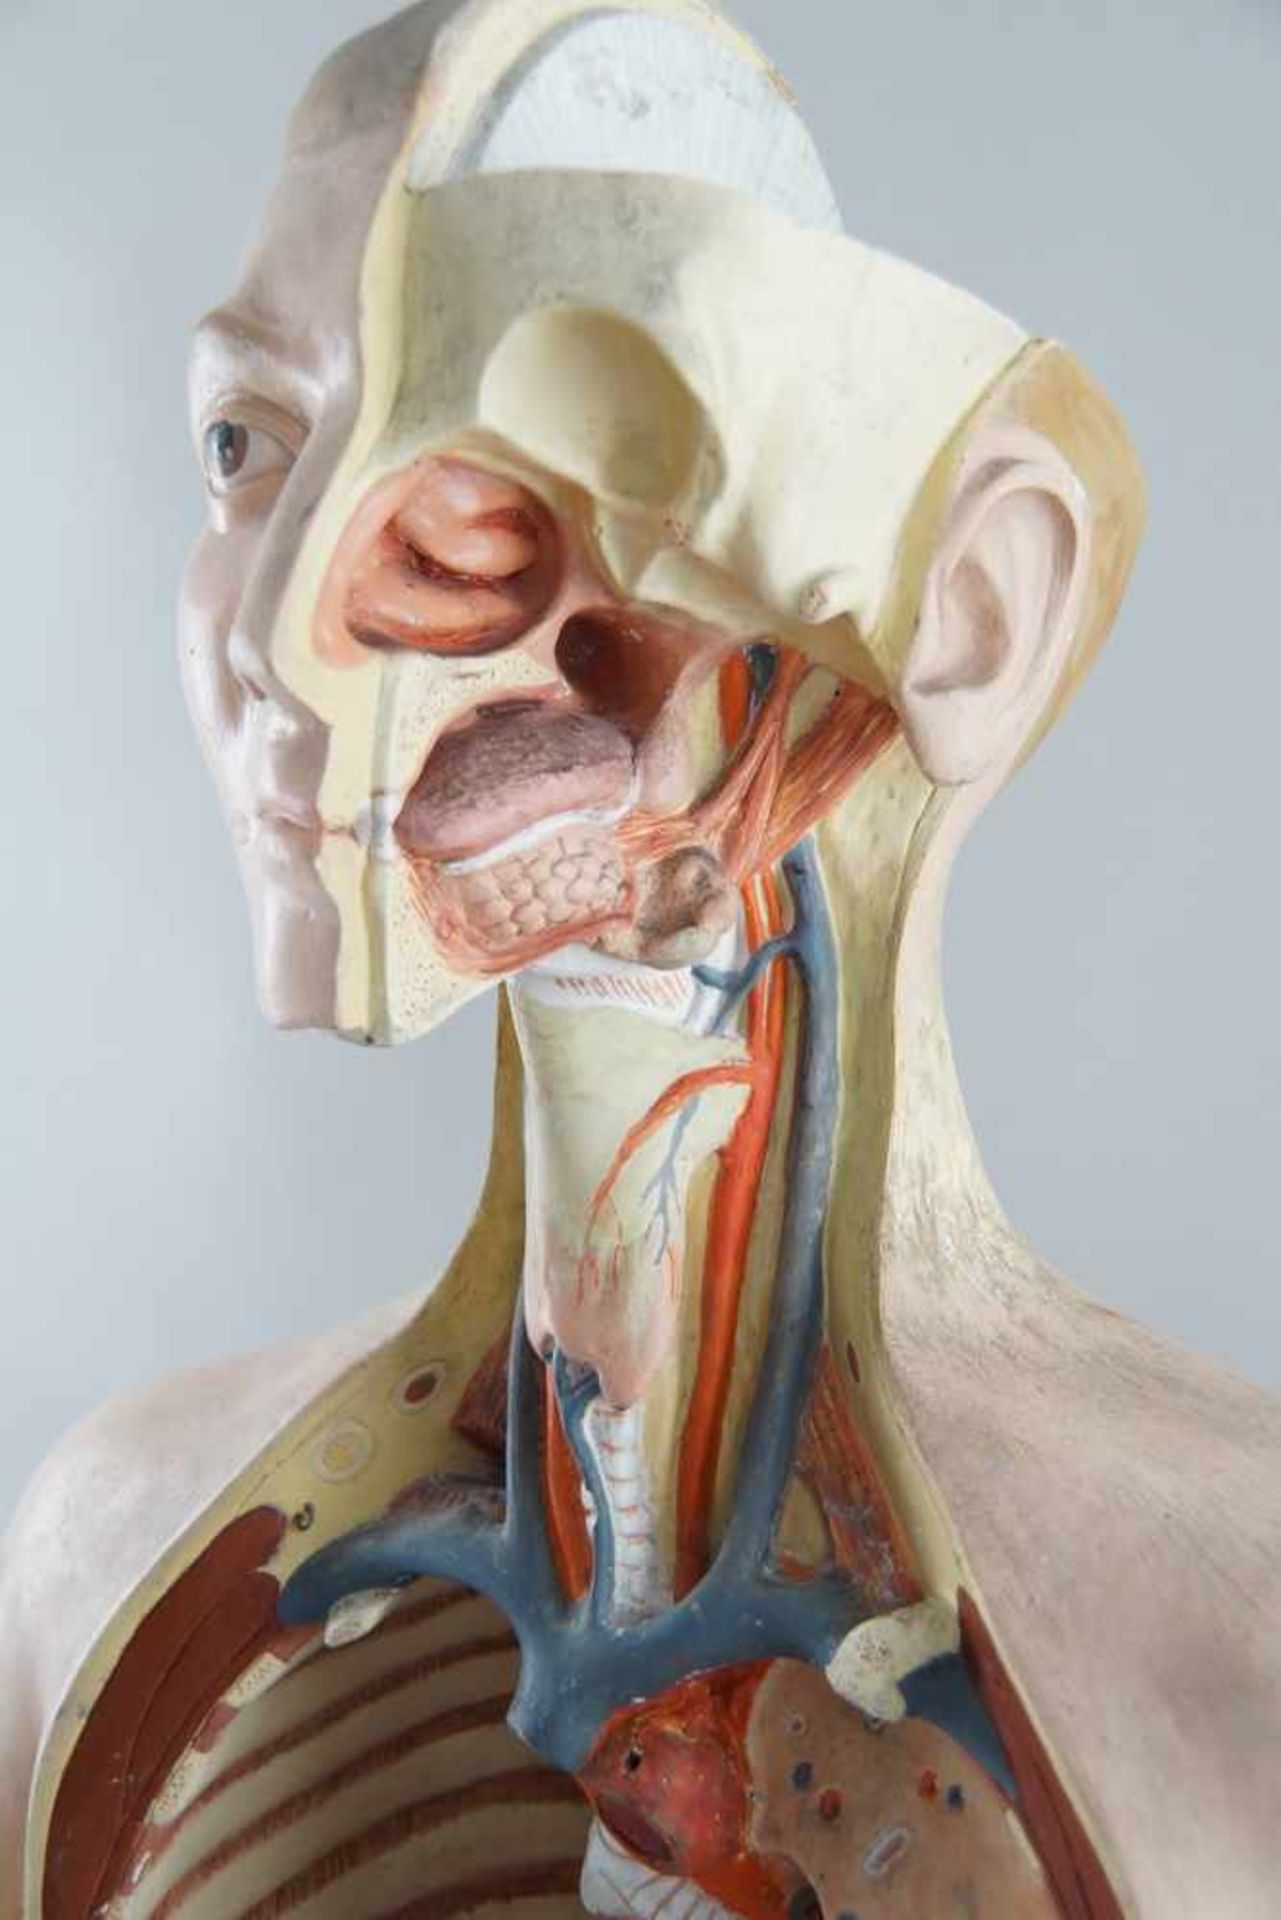 Anatomisches Modell eines menschlichen Oberkörpers mit verschiedenen Organen,Altersspuren/ - Bild 4 aus 7